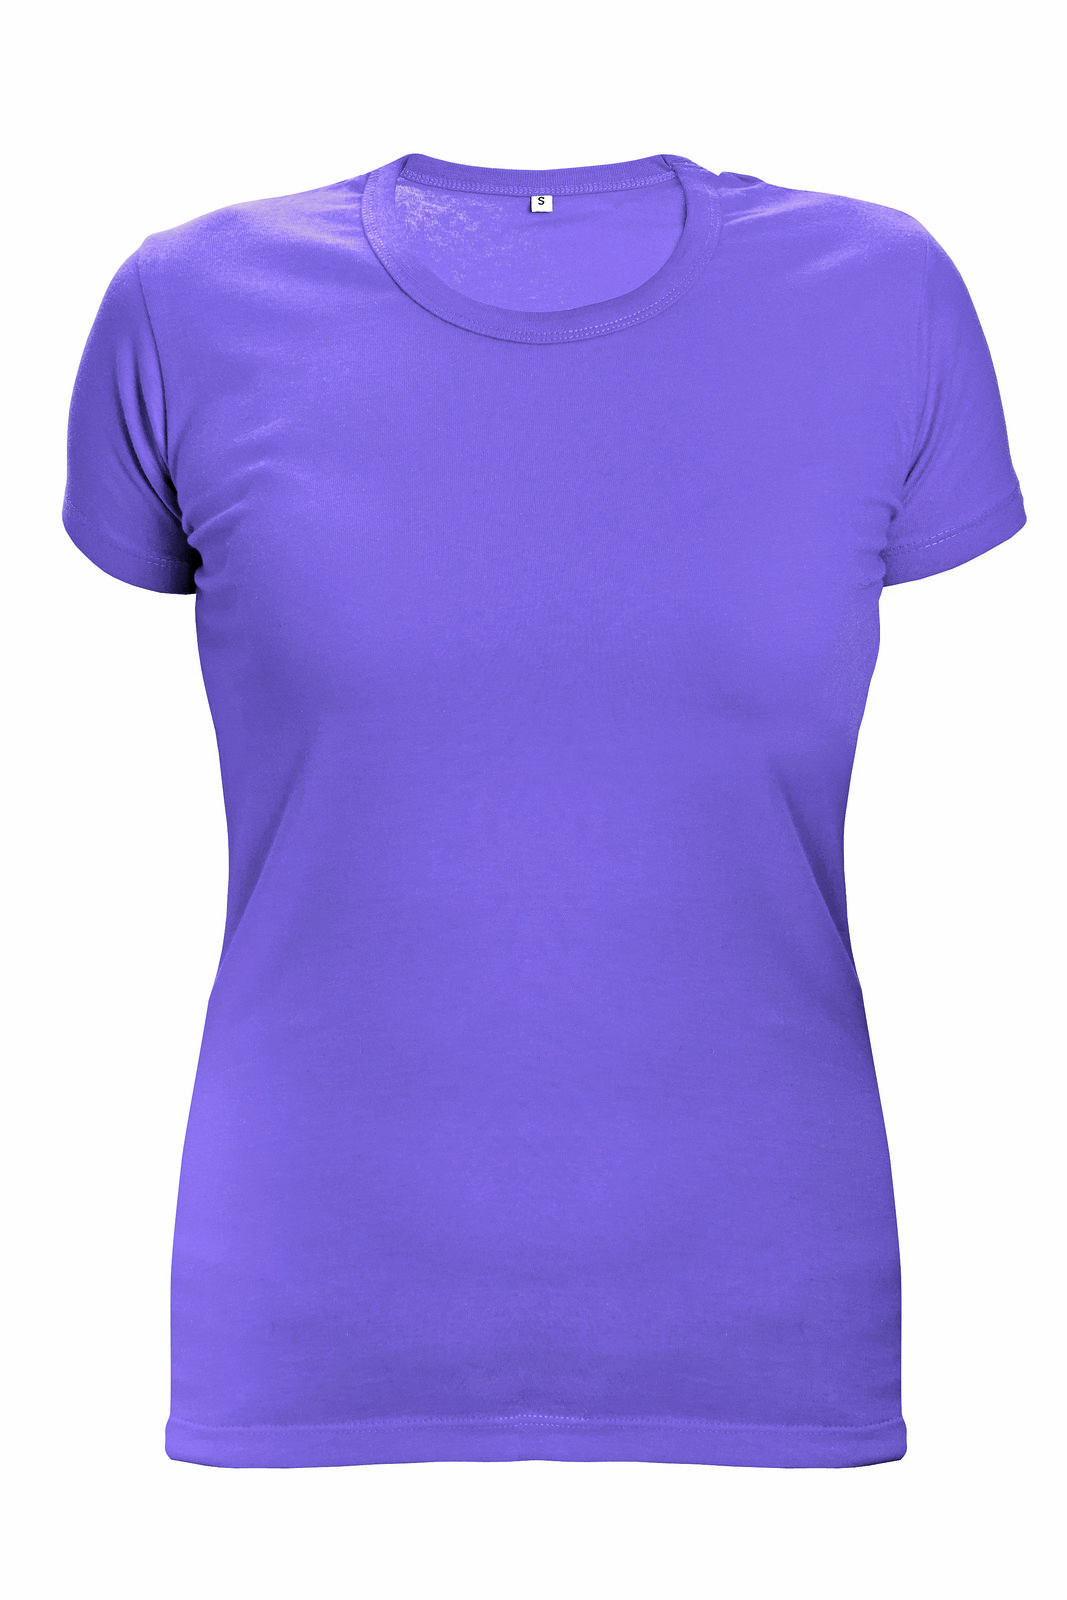 Dámske tričko s krátkym rukávom Surma Lady - veľkosť: XS, farba: fialová